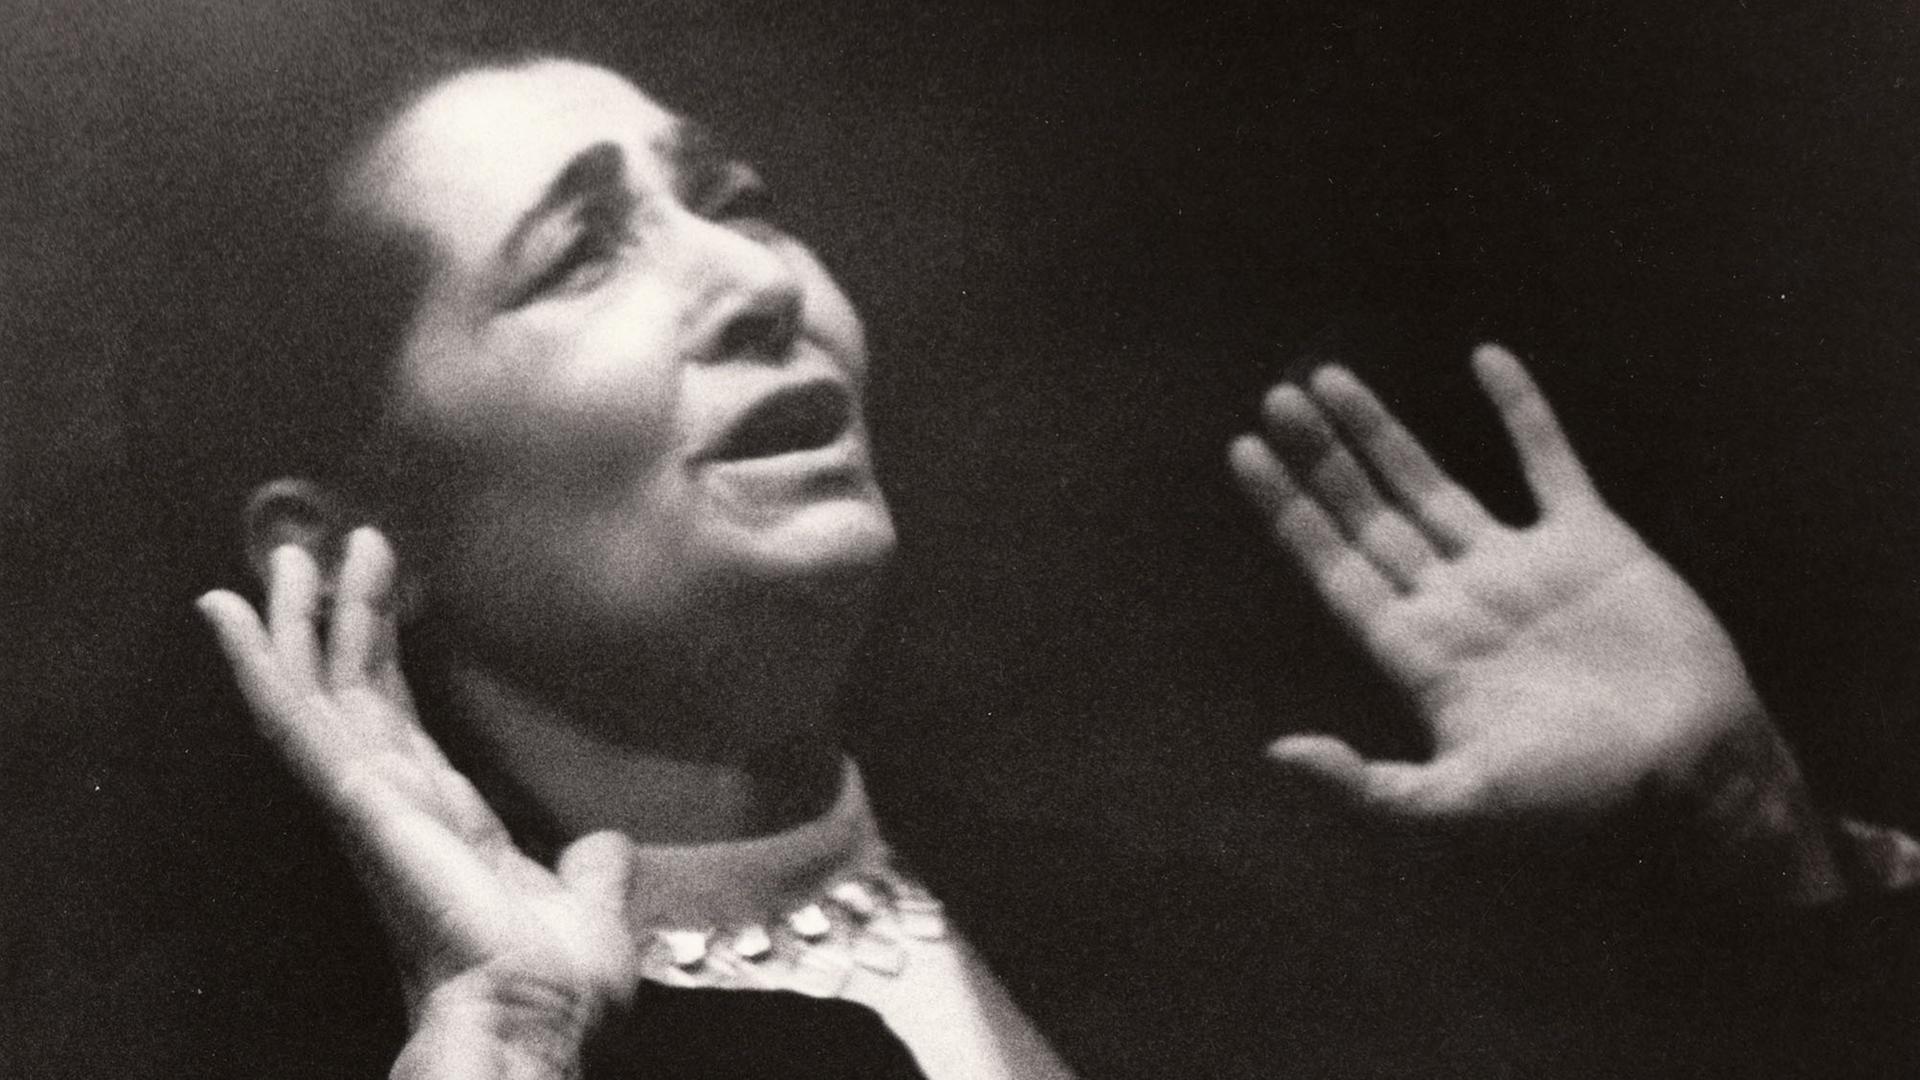 Schwarz-weiß-Aufnahme einer Frau, die mit dramatischem Gesichtsausdruck und nach oben gestreckten Händen singt.